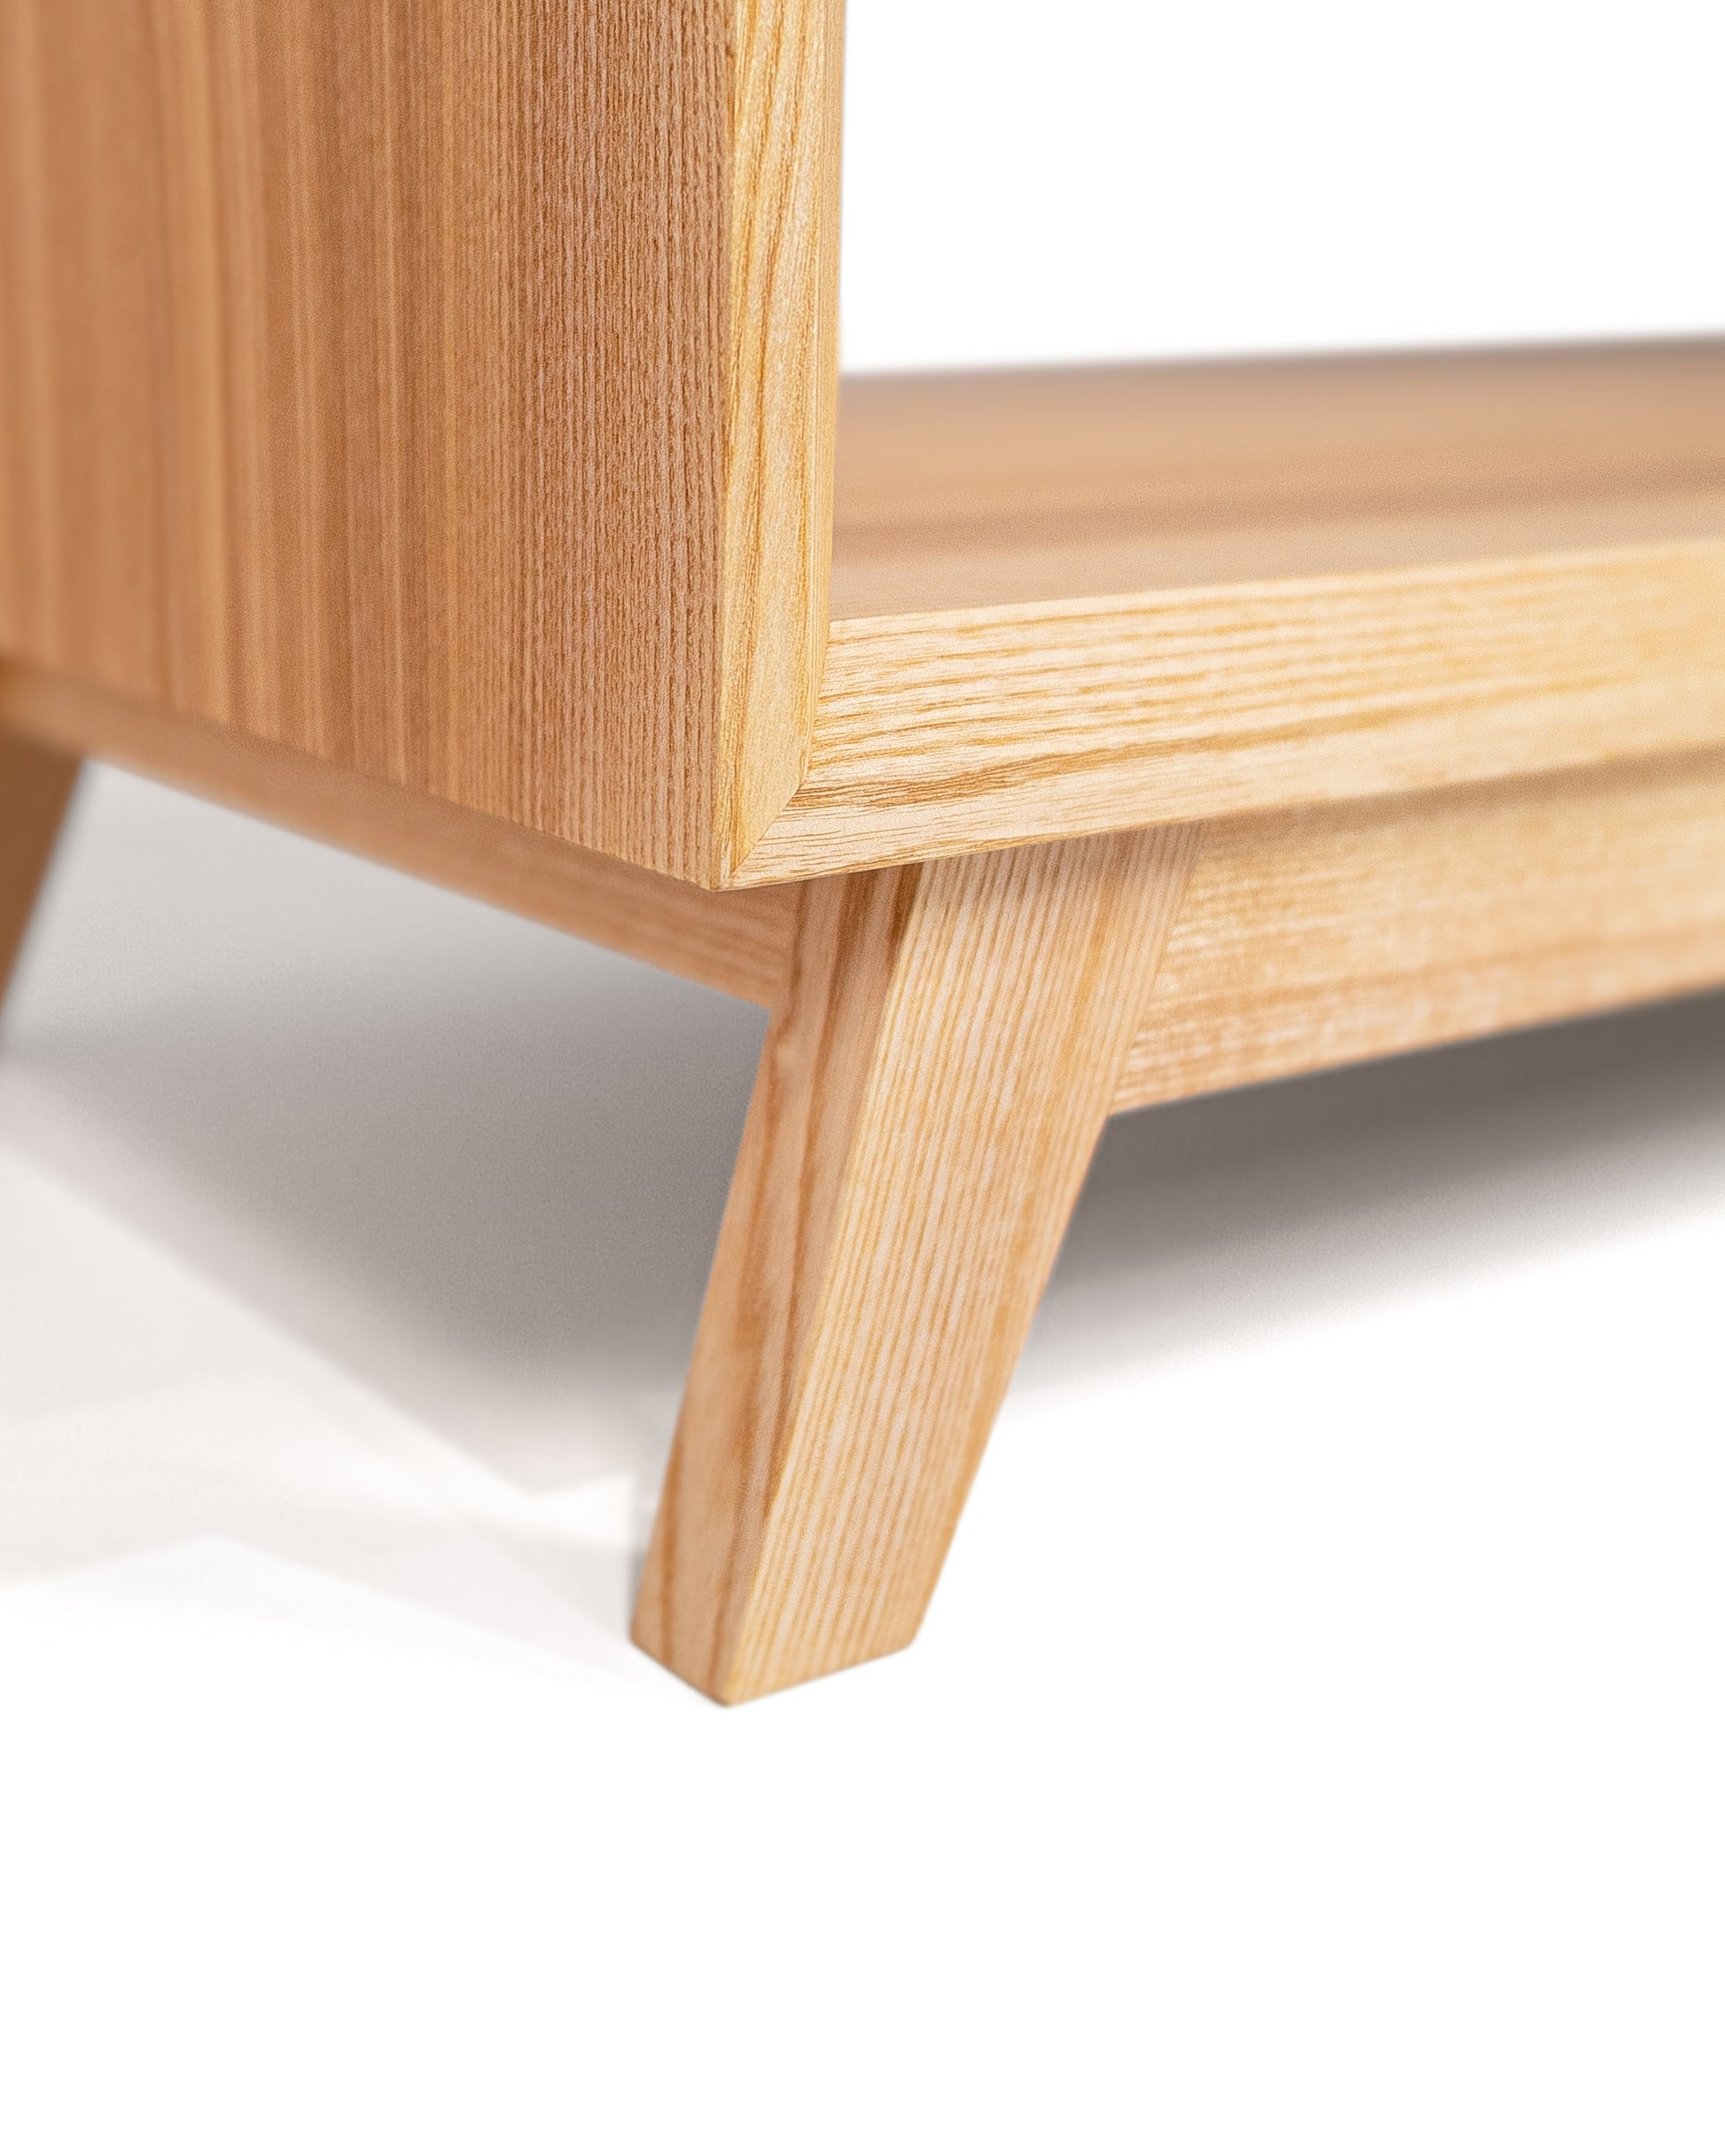 Lowboard in Esche lackiert:Massivholz - Qualität, die sich auszahlt:Mit diesem Lowboard aus Massivholz investieren Sie in ein hochwertiges Möbelstück, dass über die Jahre hinweg robust und widerstandfähig bleibt.